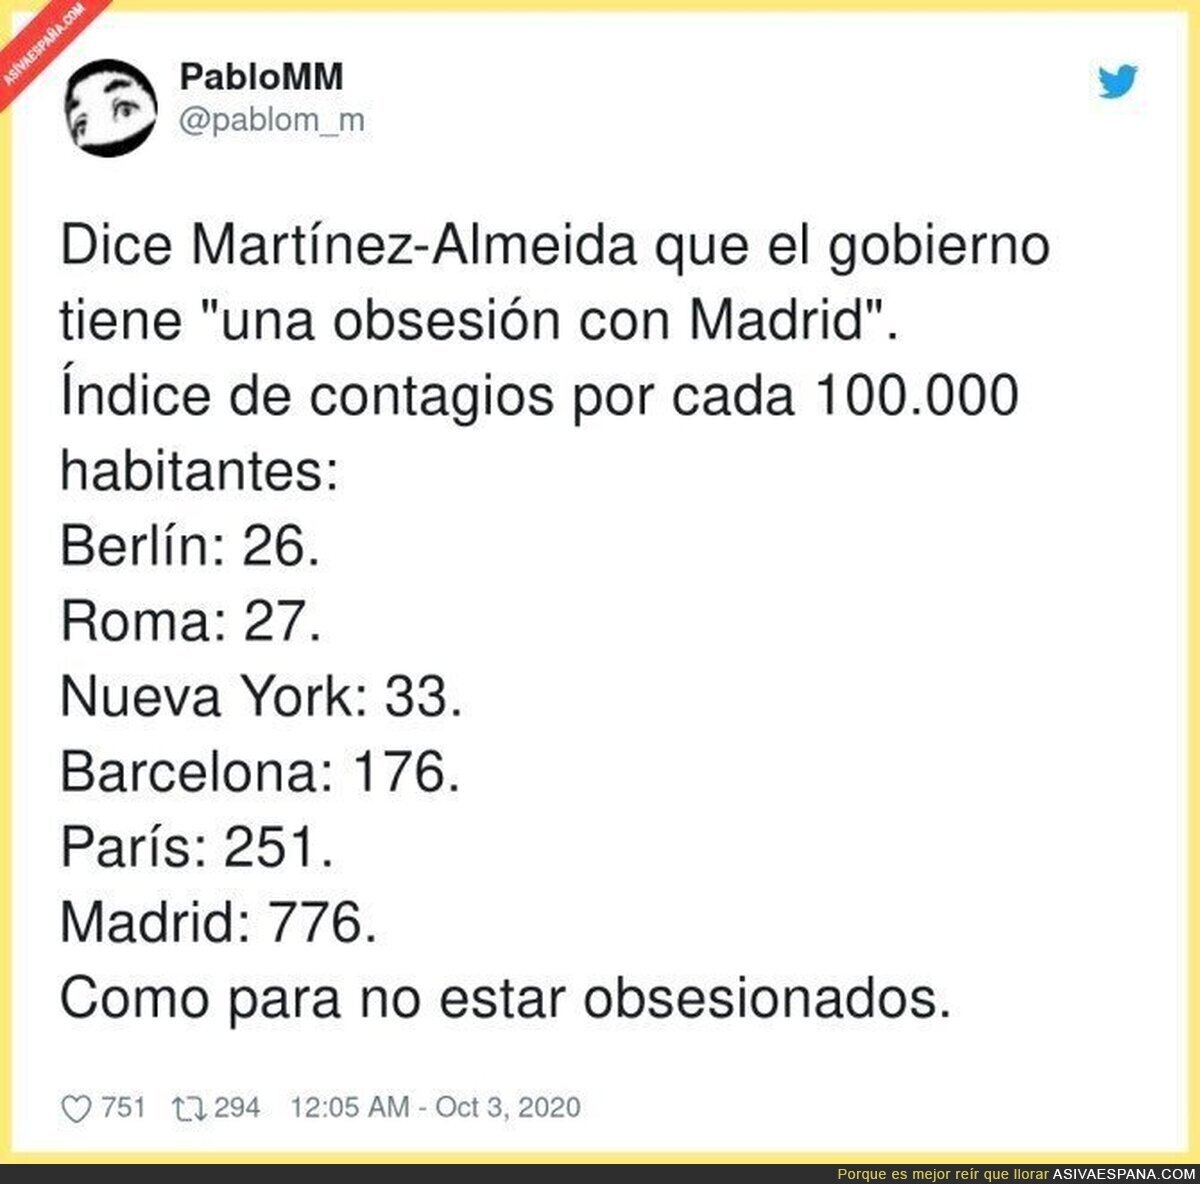 La obsesión con Madrid tiene cifras